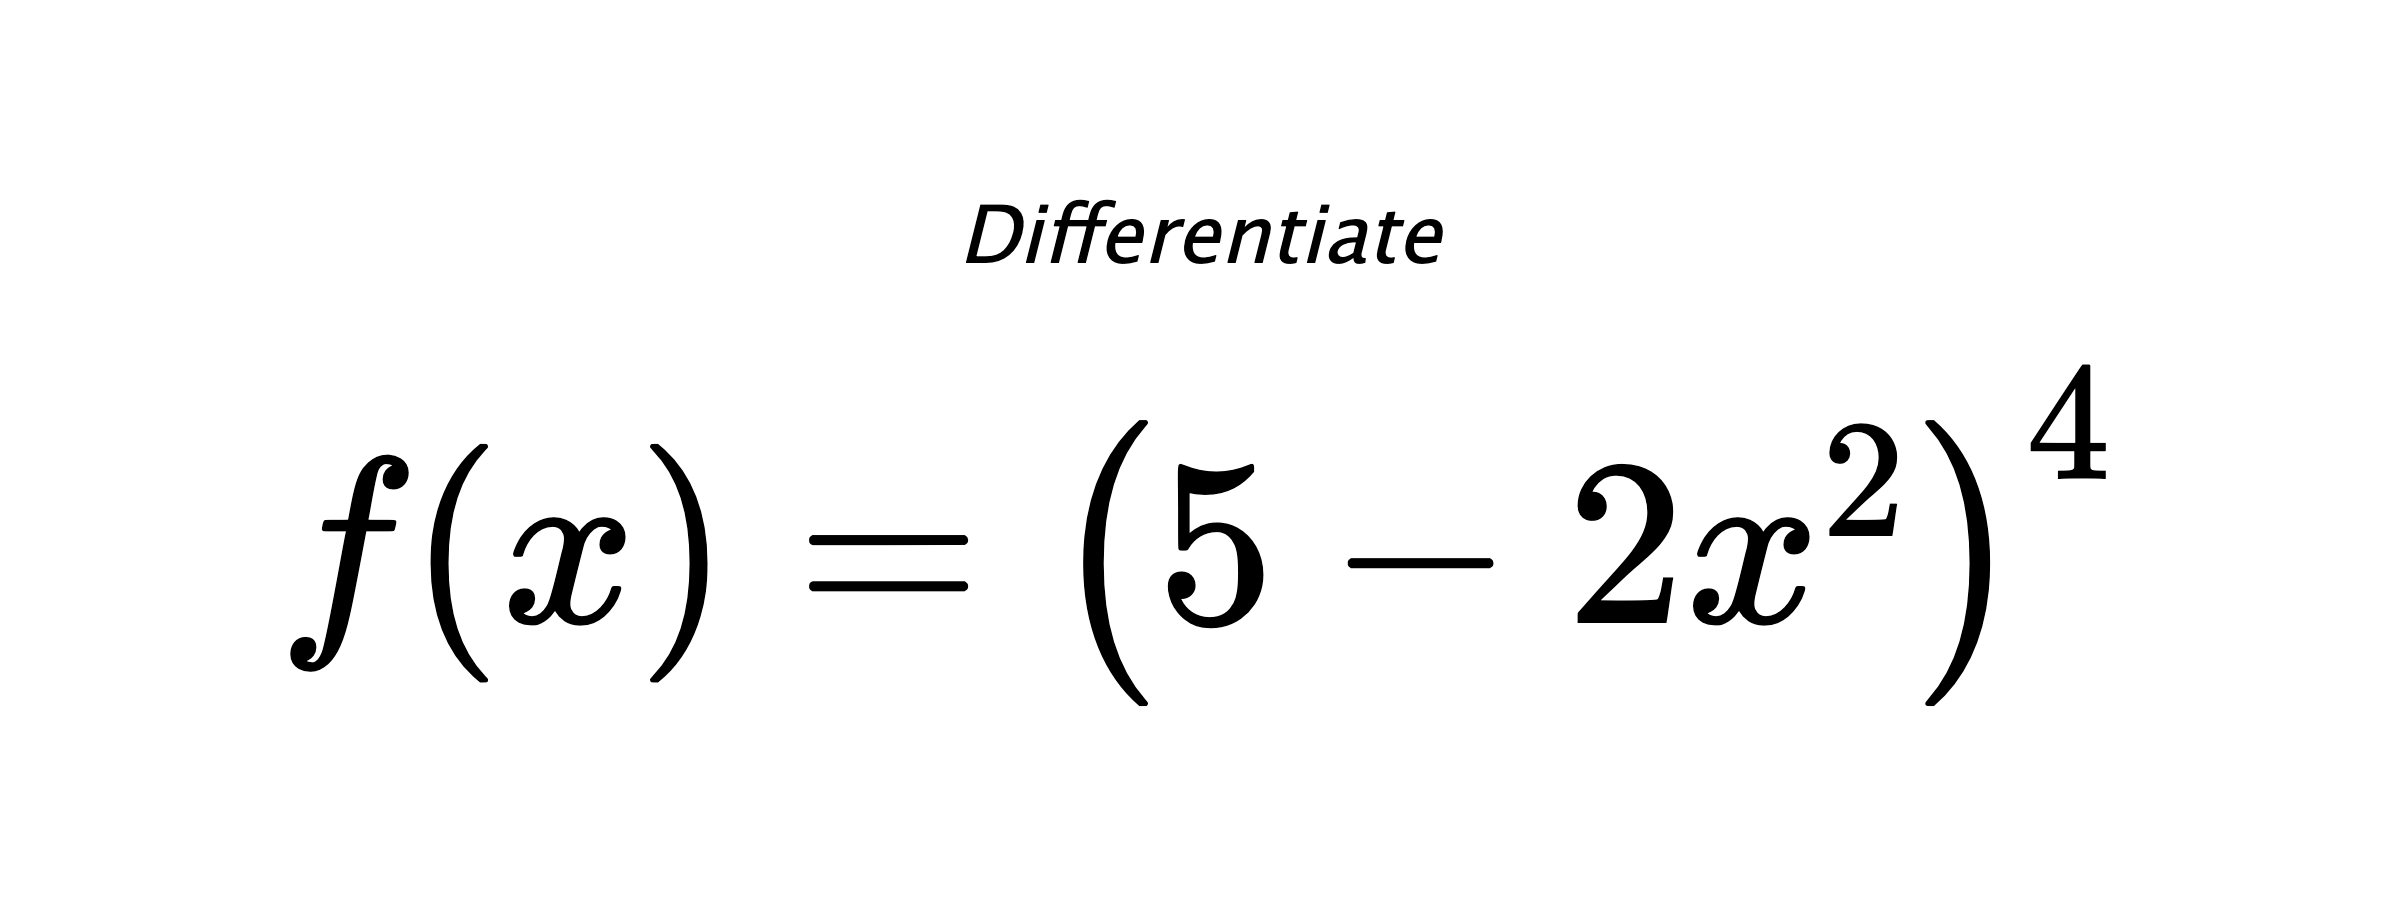 Differentiate $ f(x) = \left(5 - 2 x^{2}\right)^{4} $